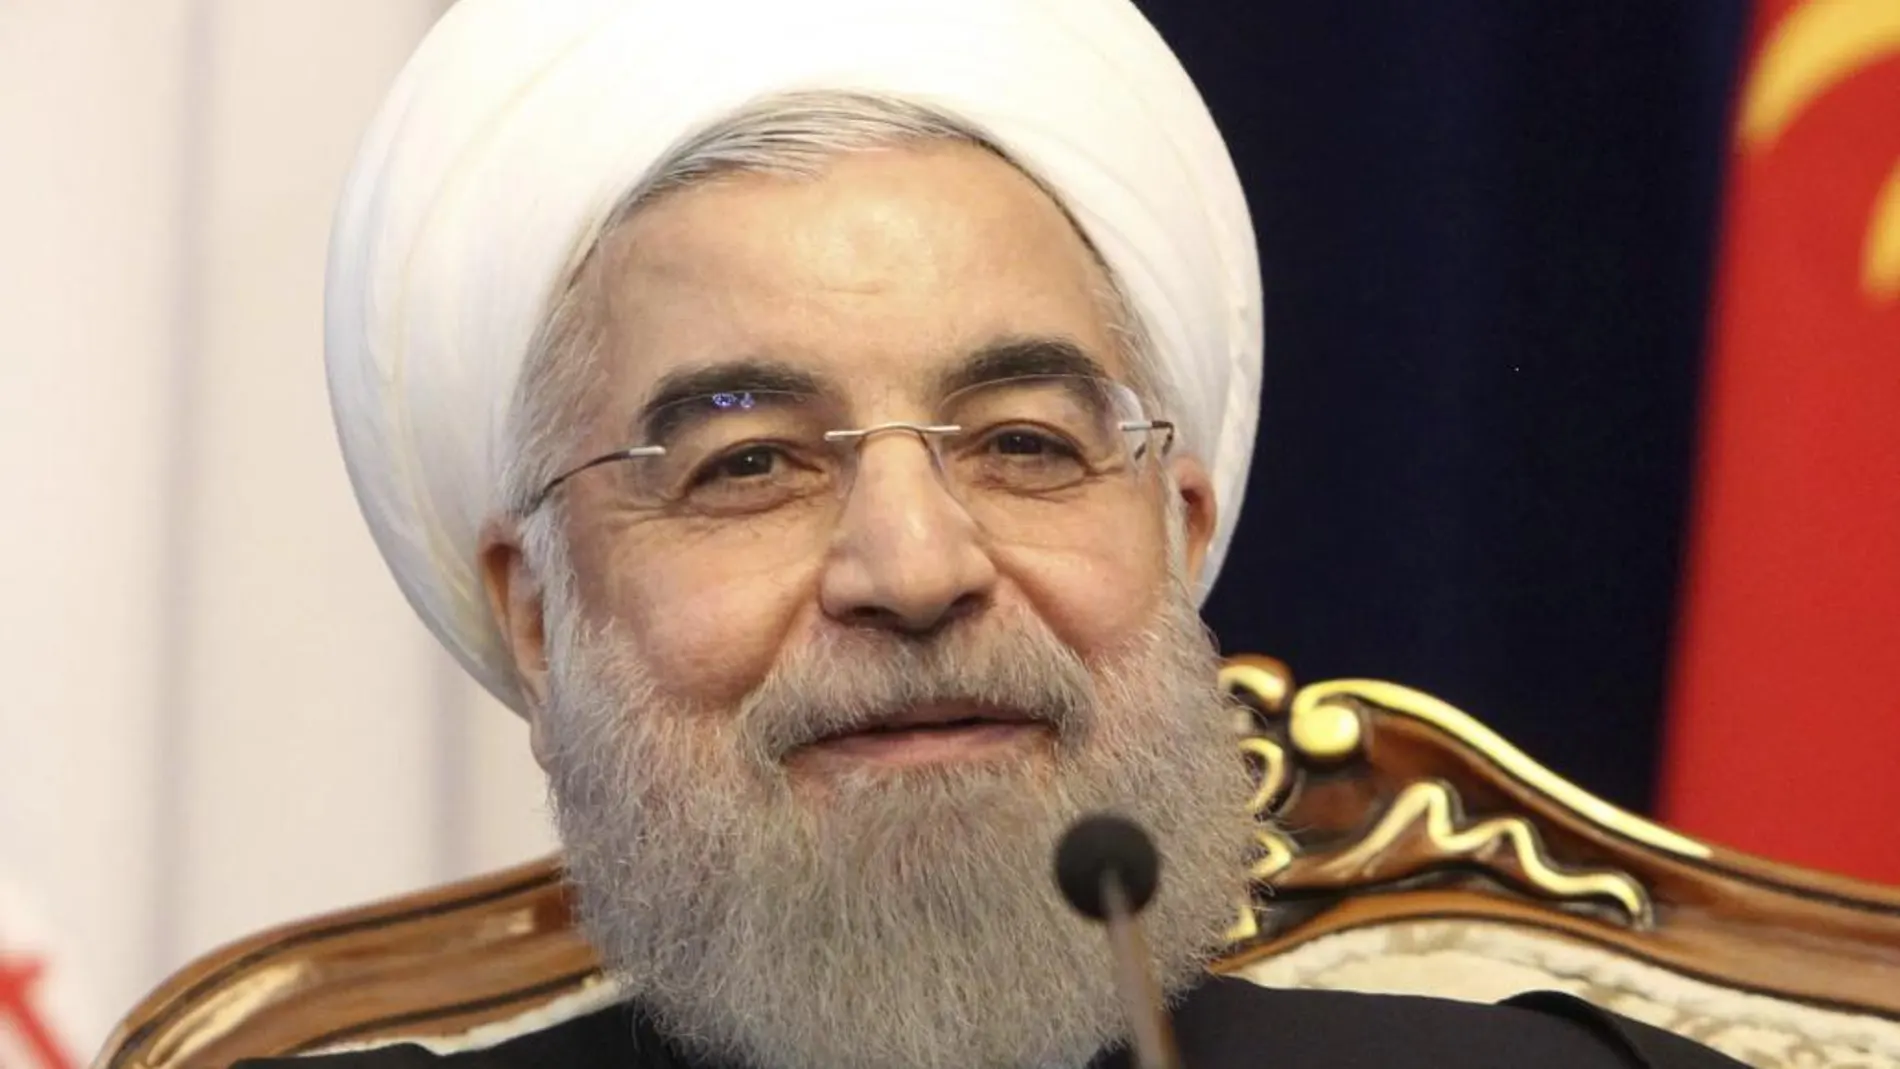 El presidente de Irán, Hassan Rouhani, durante una rueda de prensa celebrada el pasado viernes